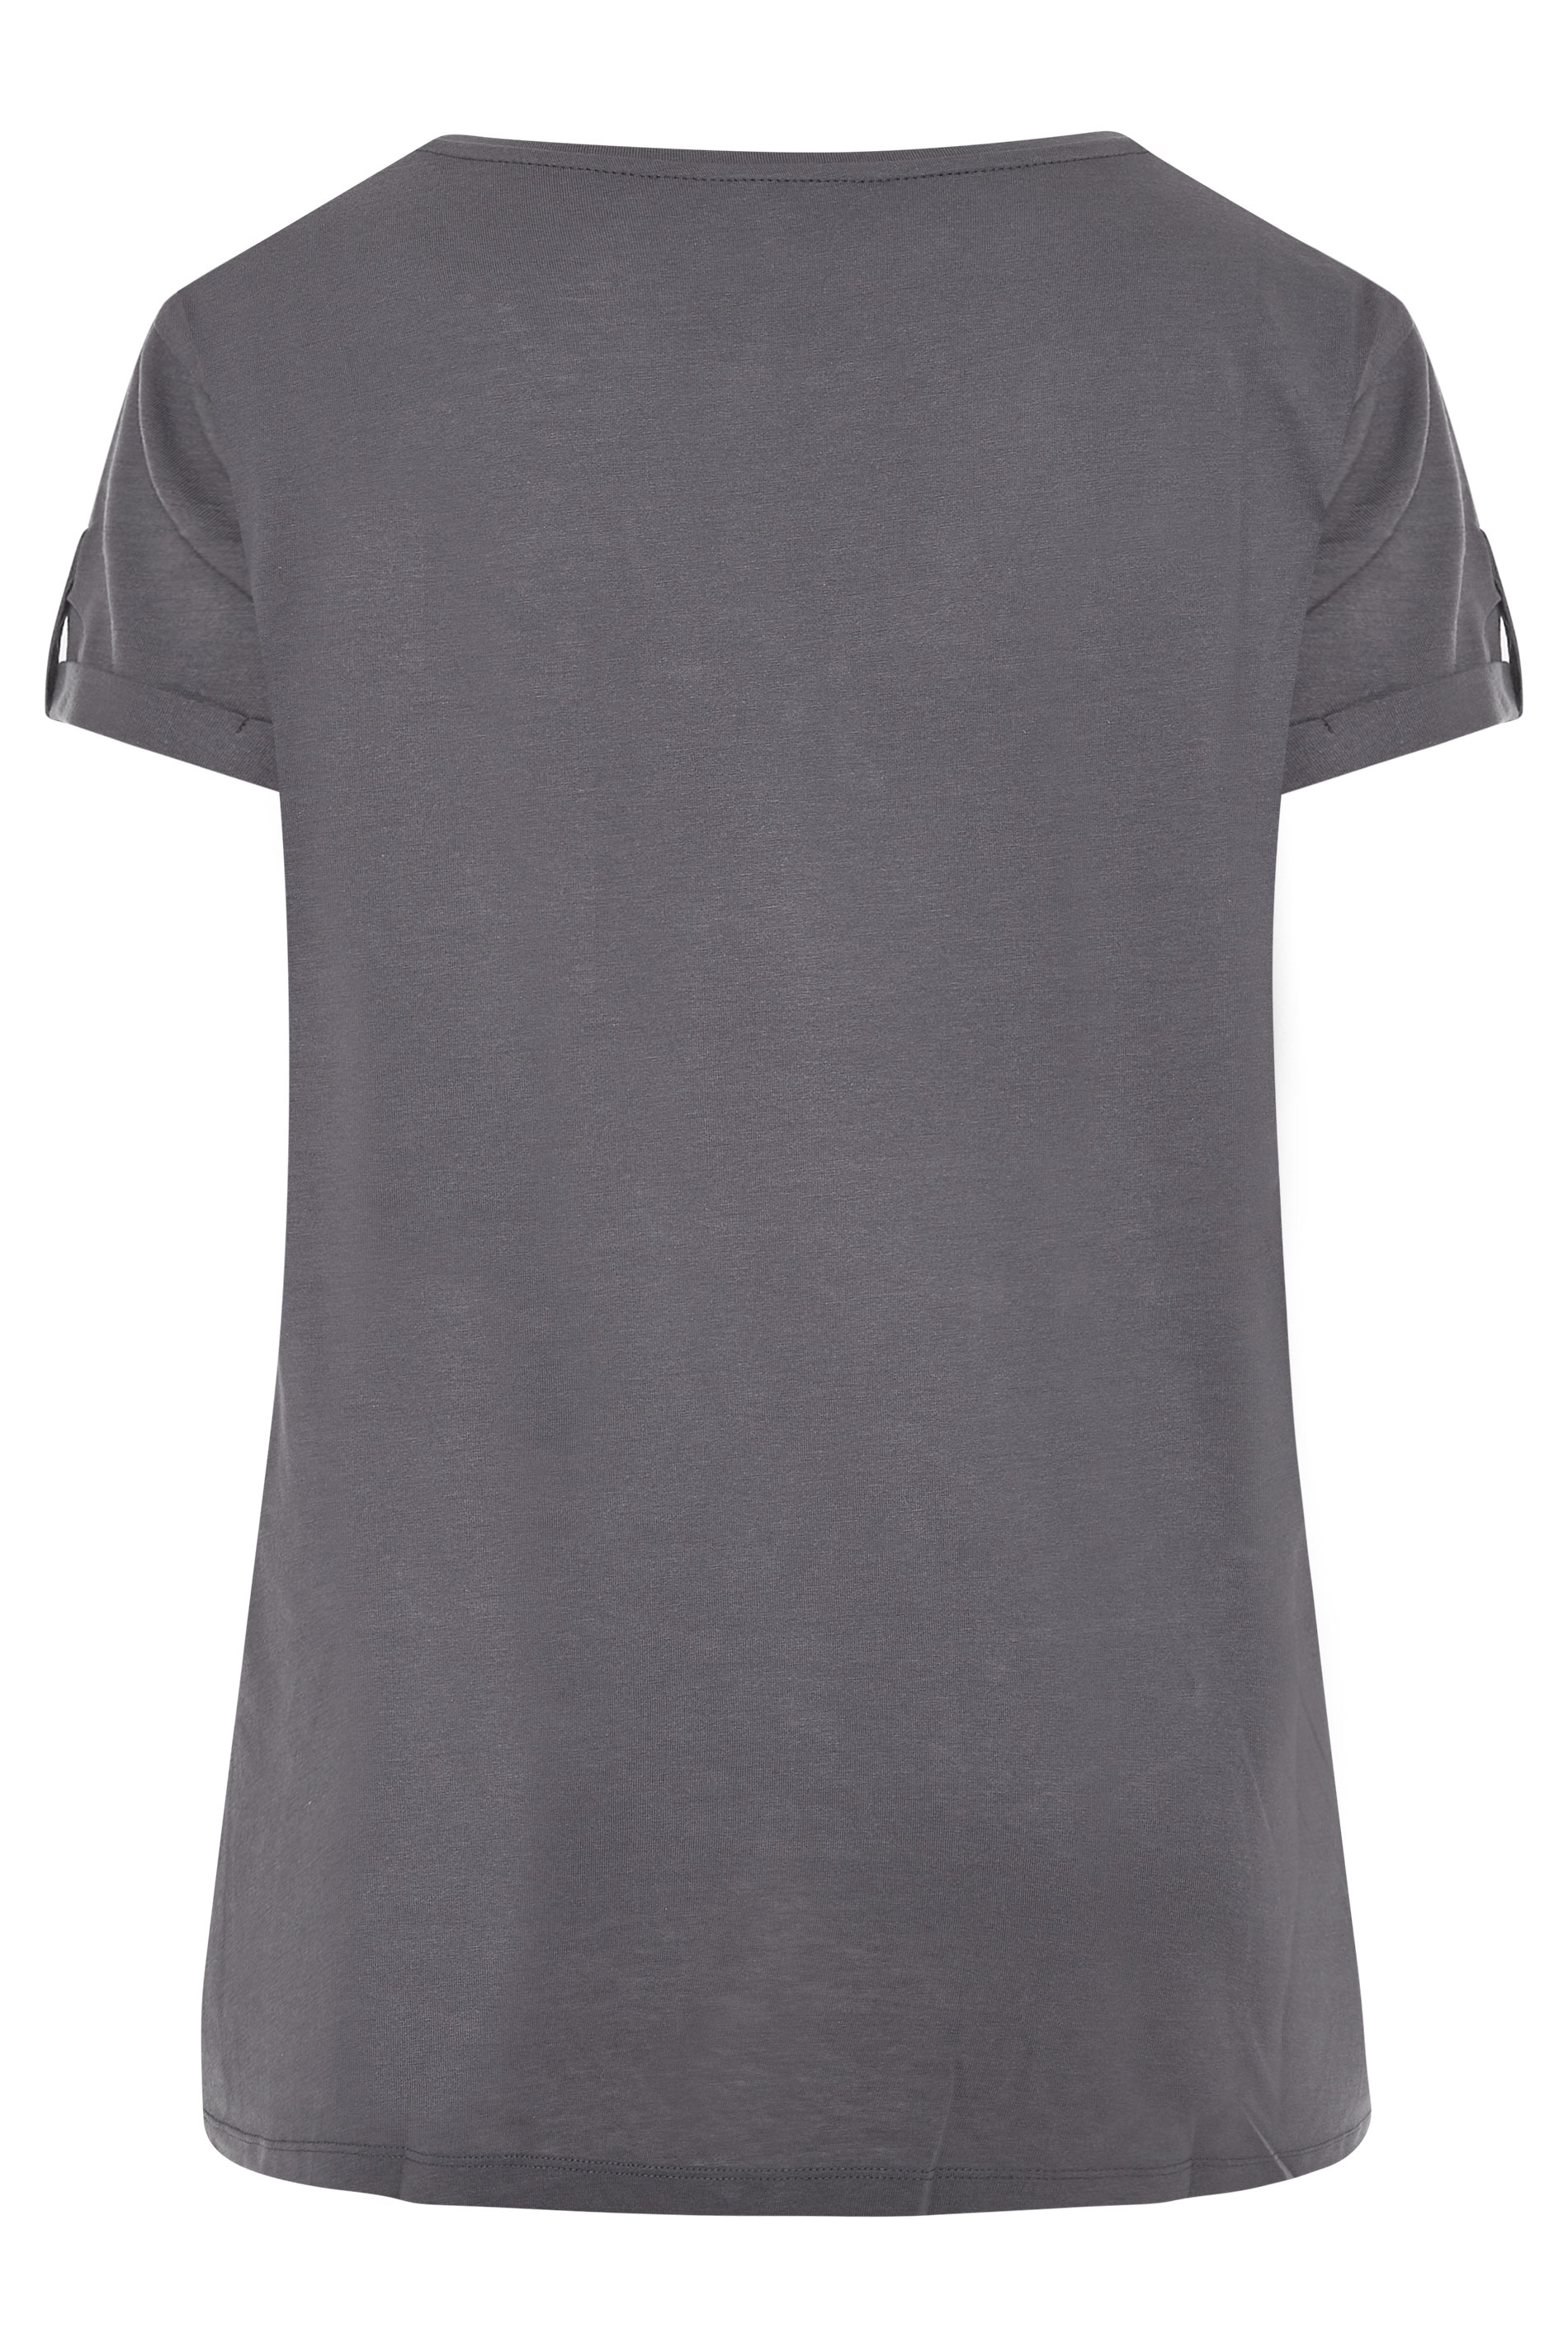 Grande taille  Tops Grande taille  T-Shirts | T-Shirt Gris Charbonneux Ourlet Plongeant à Poche - IY08052